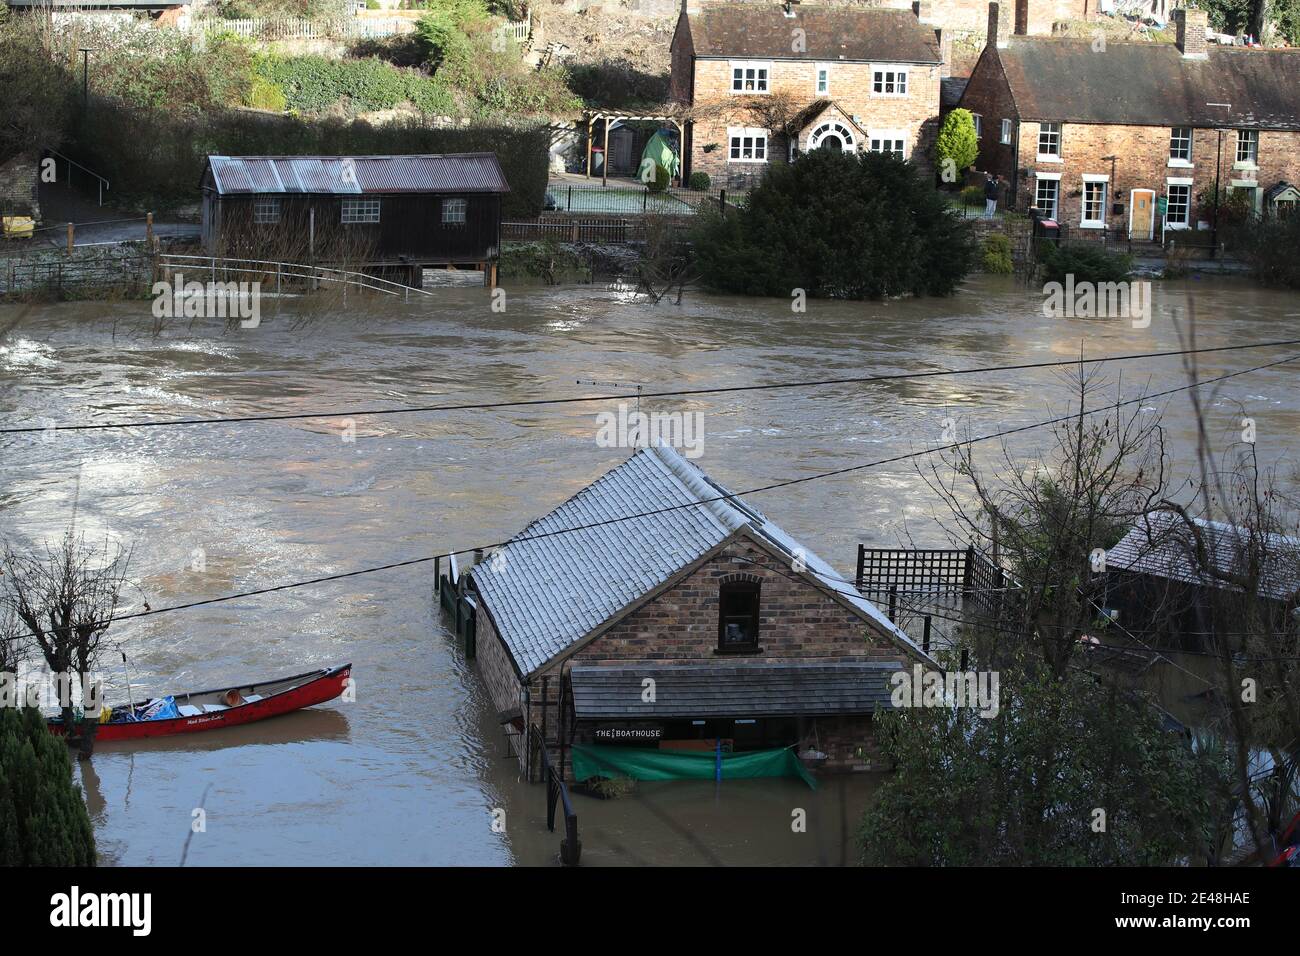 Le Boathouse (à l'avant) d'où Vic Haddock exploite sa location de canoës et son commerce de chambres d'hôtes (à droite) sont entourés par les eaux de crue de la rivière Severn à Ironbridge, Shropshire, après que Storm Christoph ait causé des inondations à travers le Royaume-Uni. Date de la photo: Vendredi 22 janvier 2021. Banque D'Images